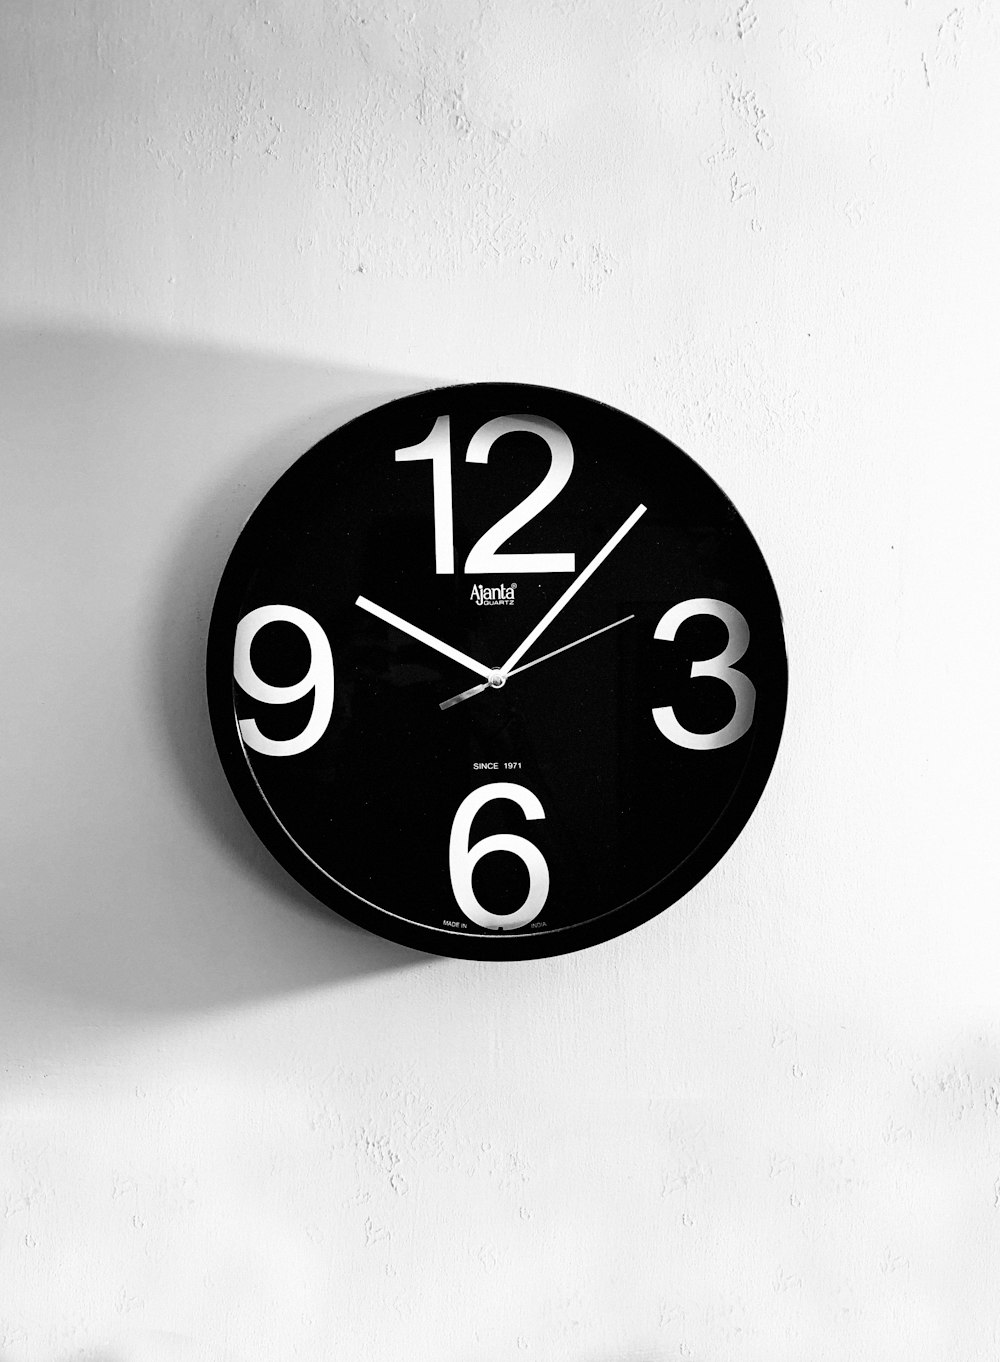 Reloj de pared analógico en blanco y negro a las 10:00